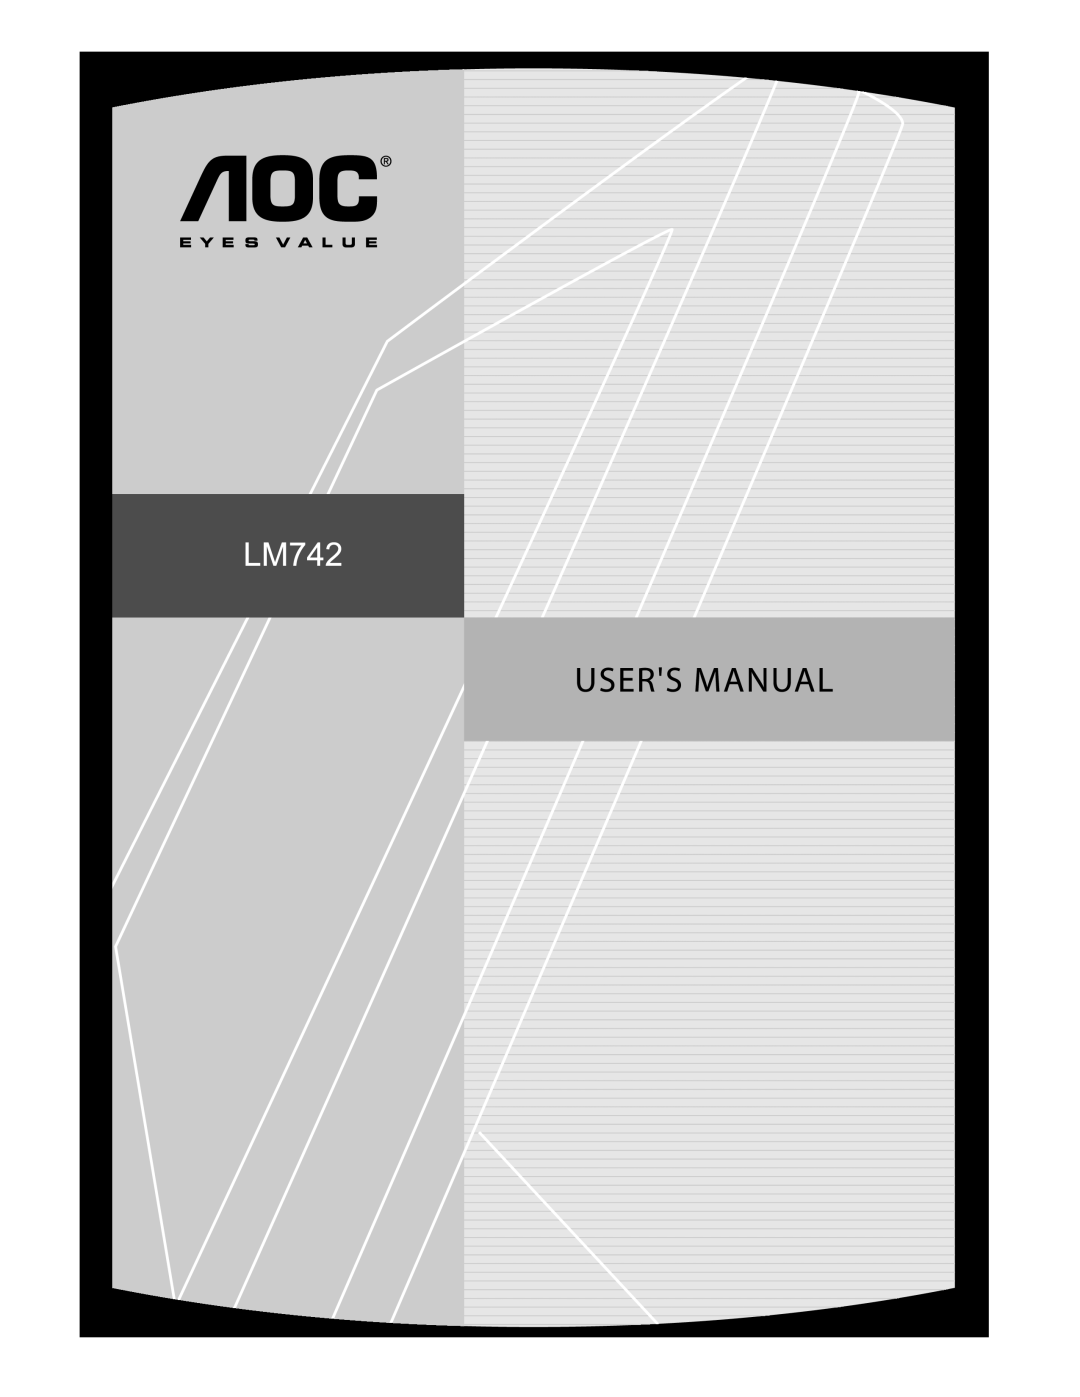 AOC LM742 manual 